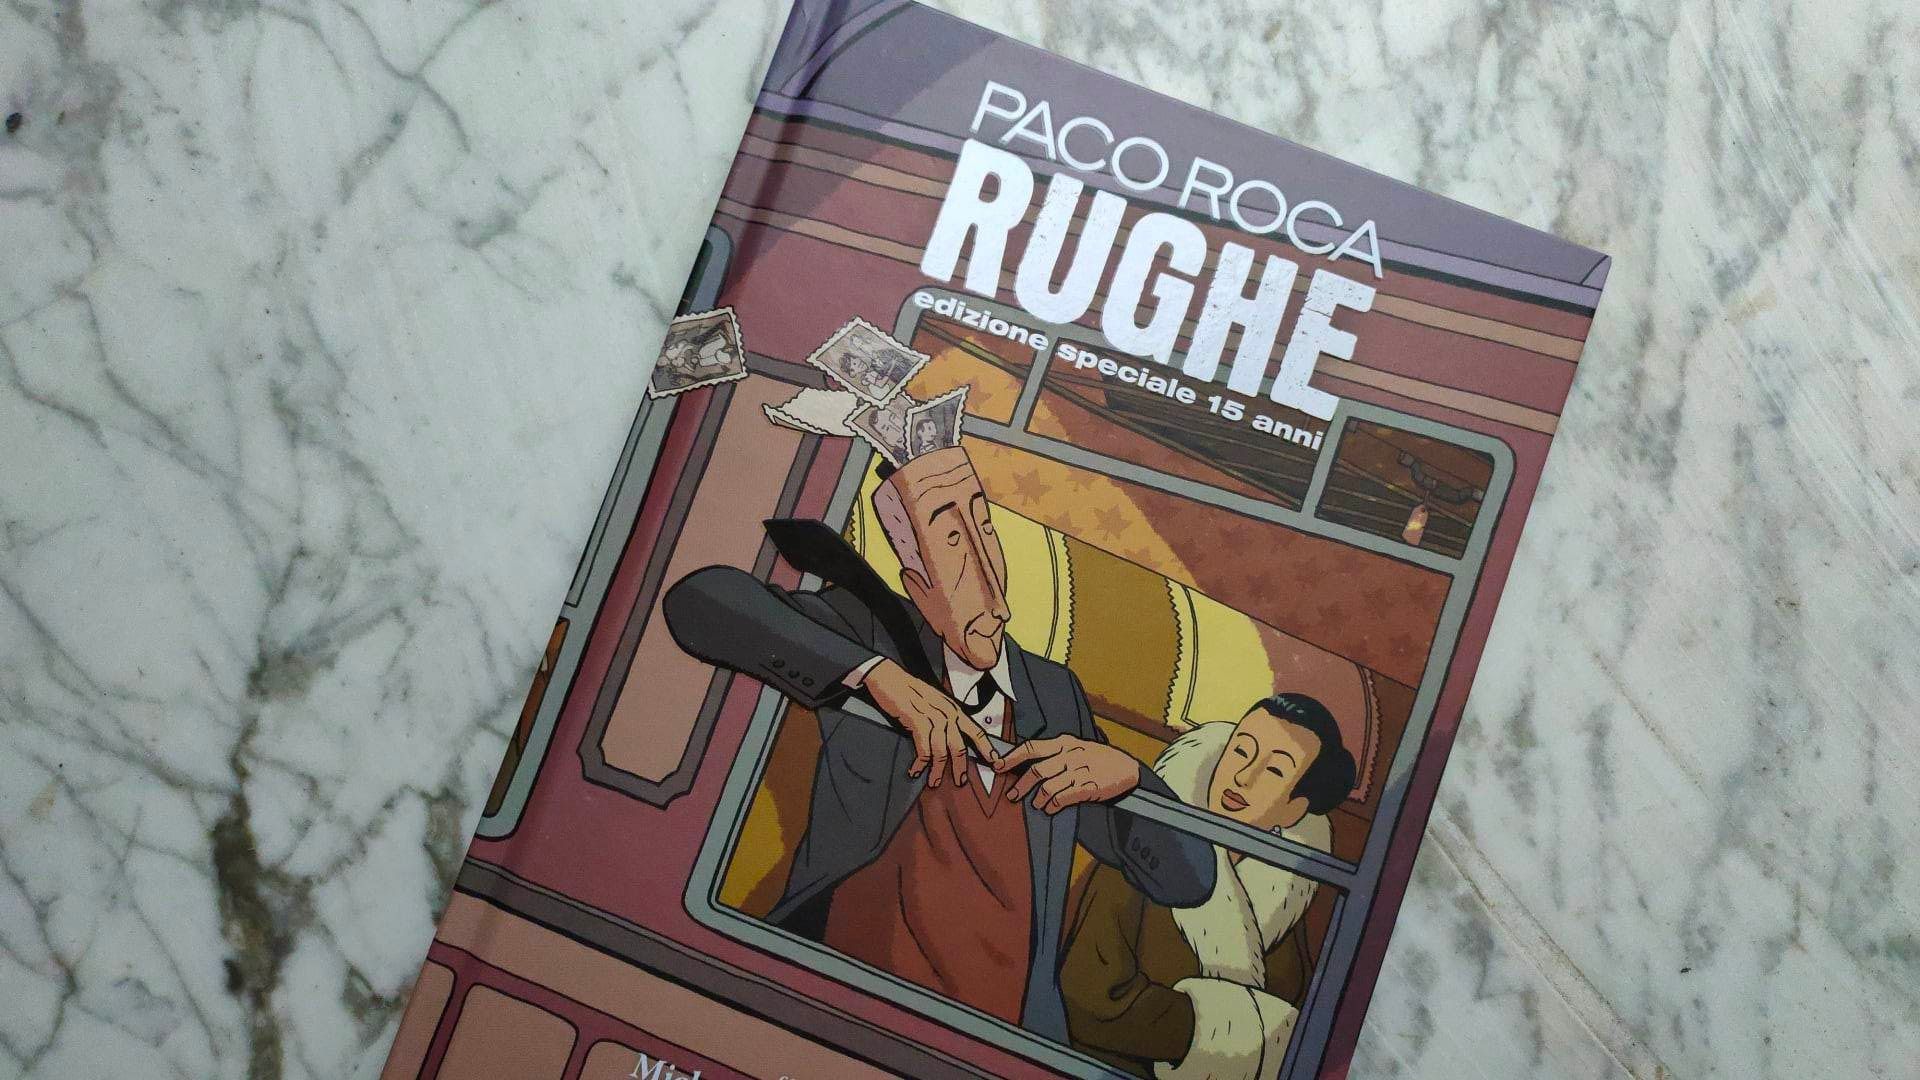 “Rughe”, il capolavoro di Paco Roca